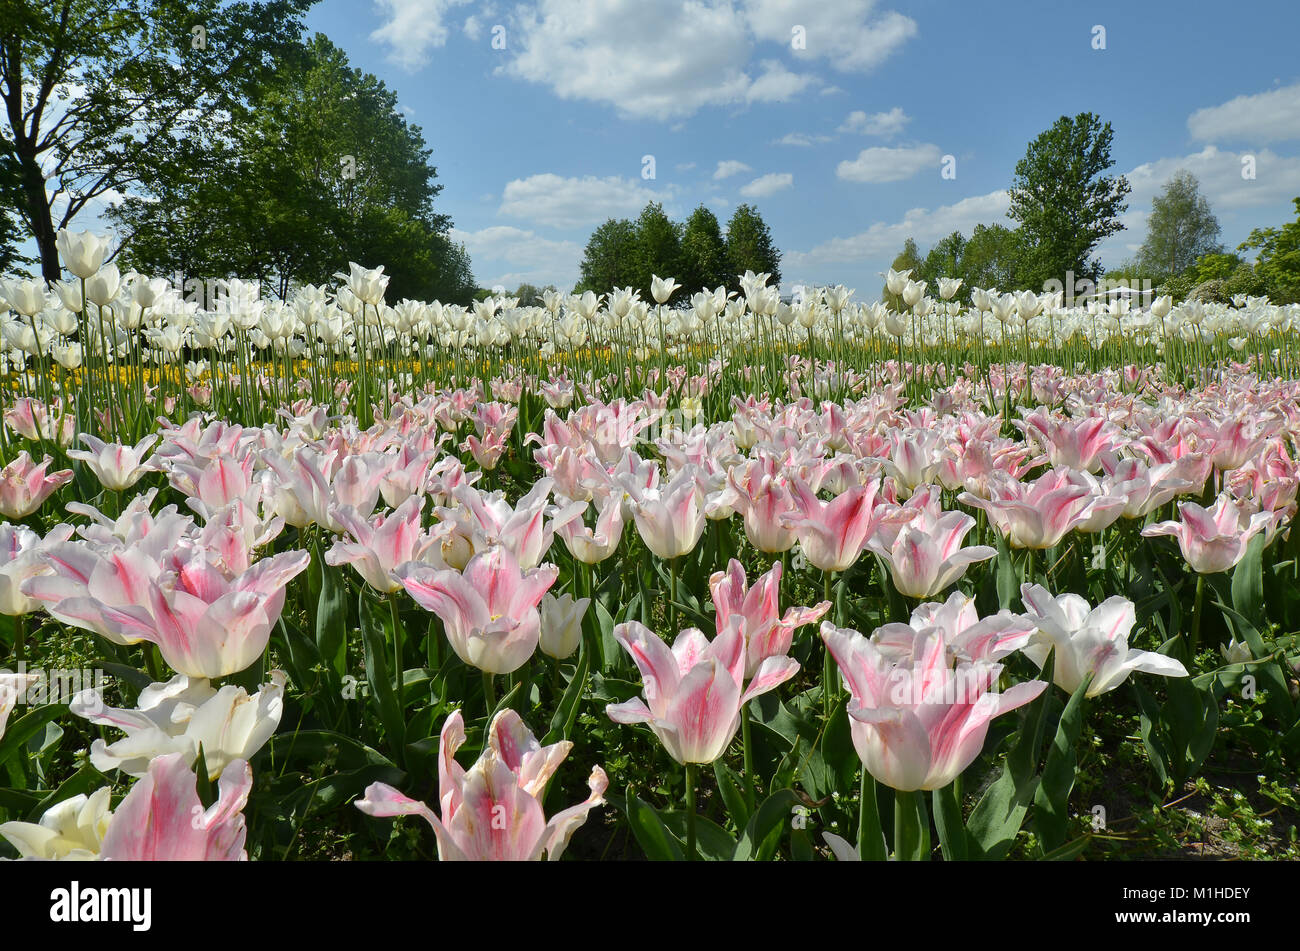 L'osier et des tulipes roses dans un champ plein de fleurs Banque D'Images